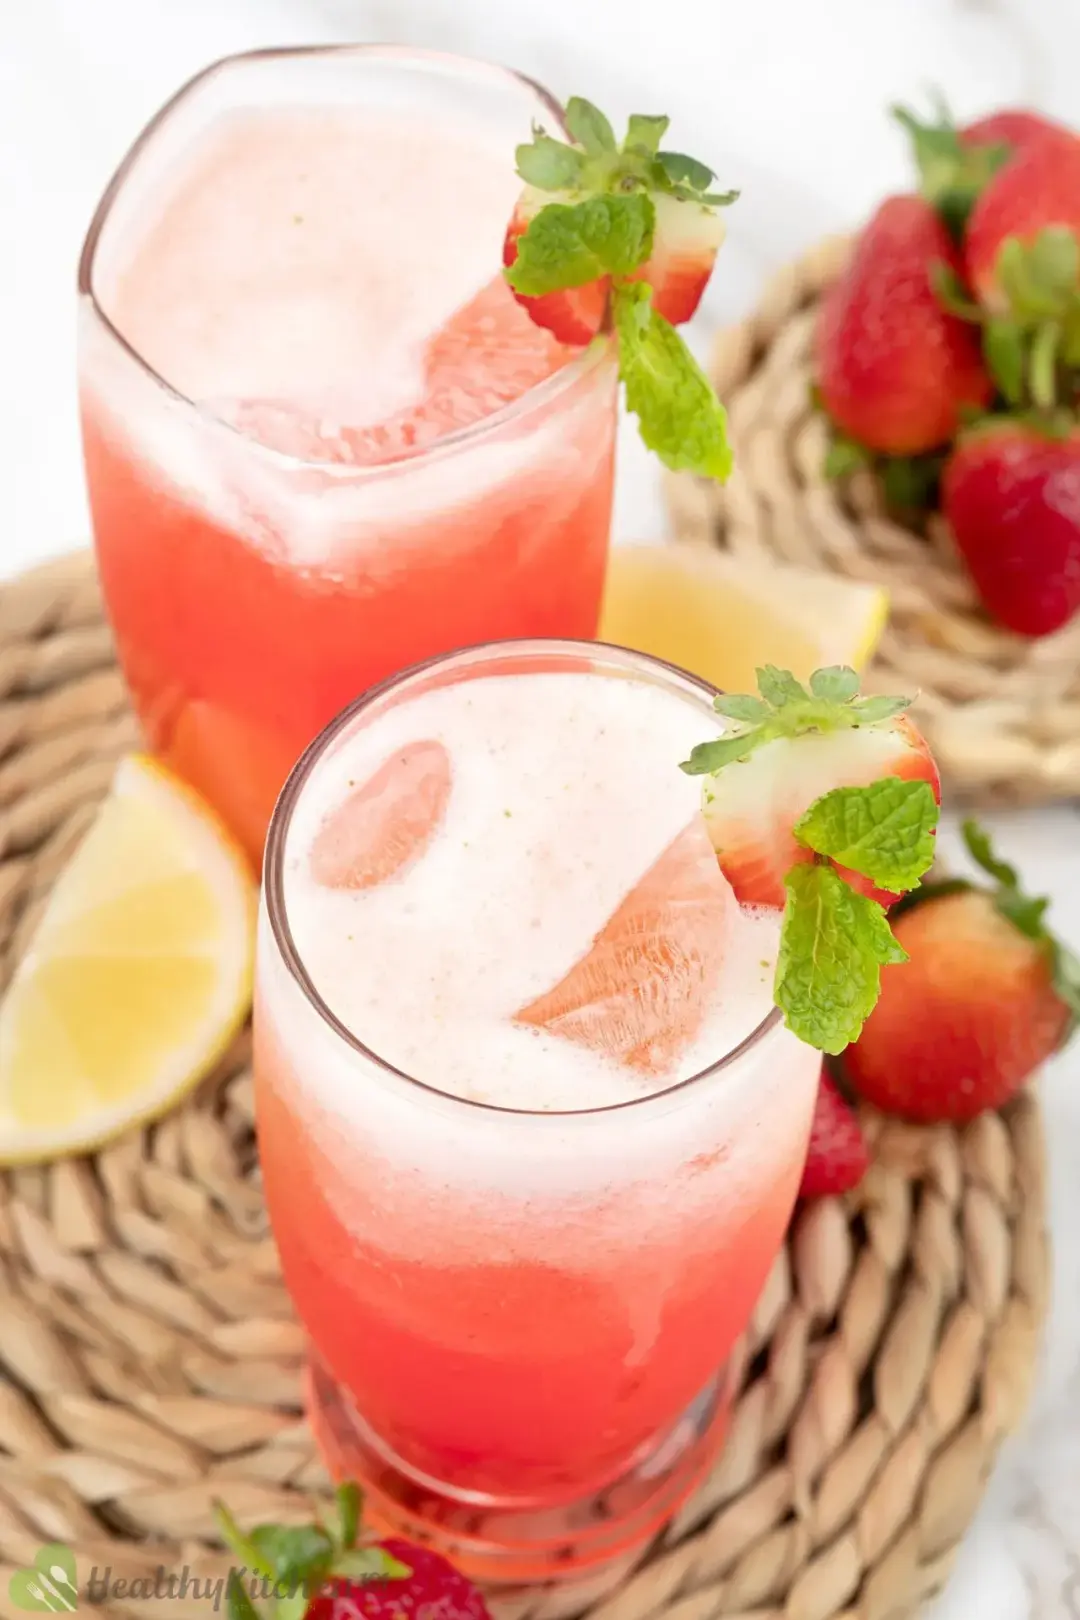 Strawberry Lemonade Ingredients